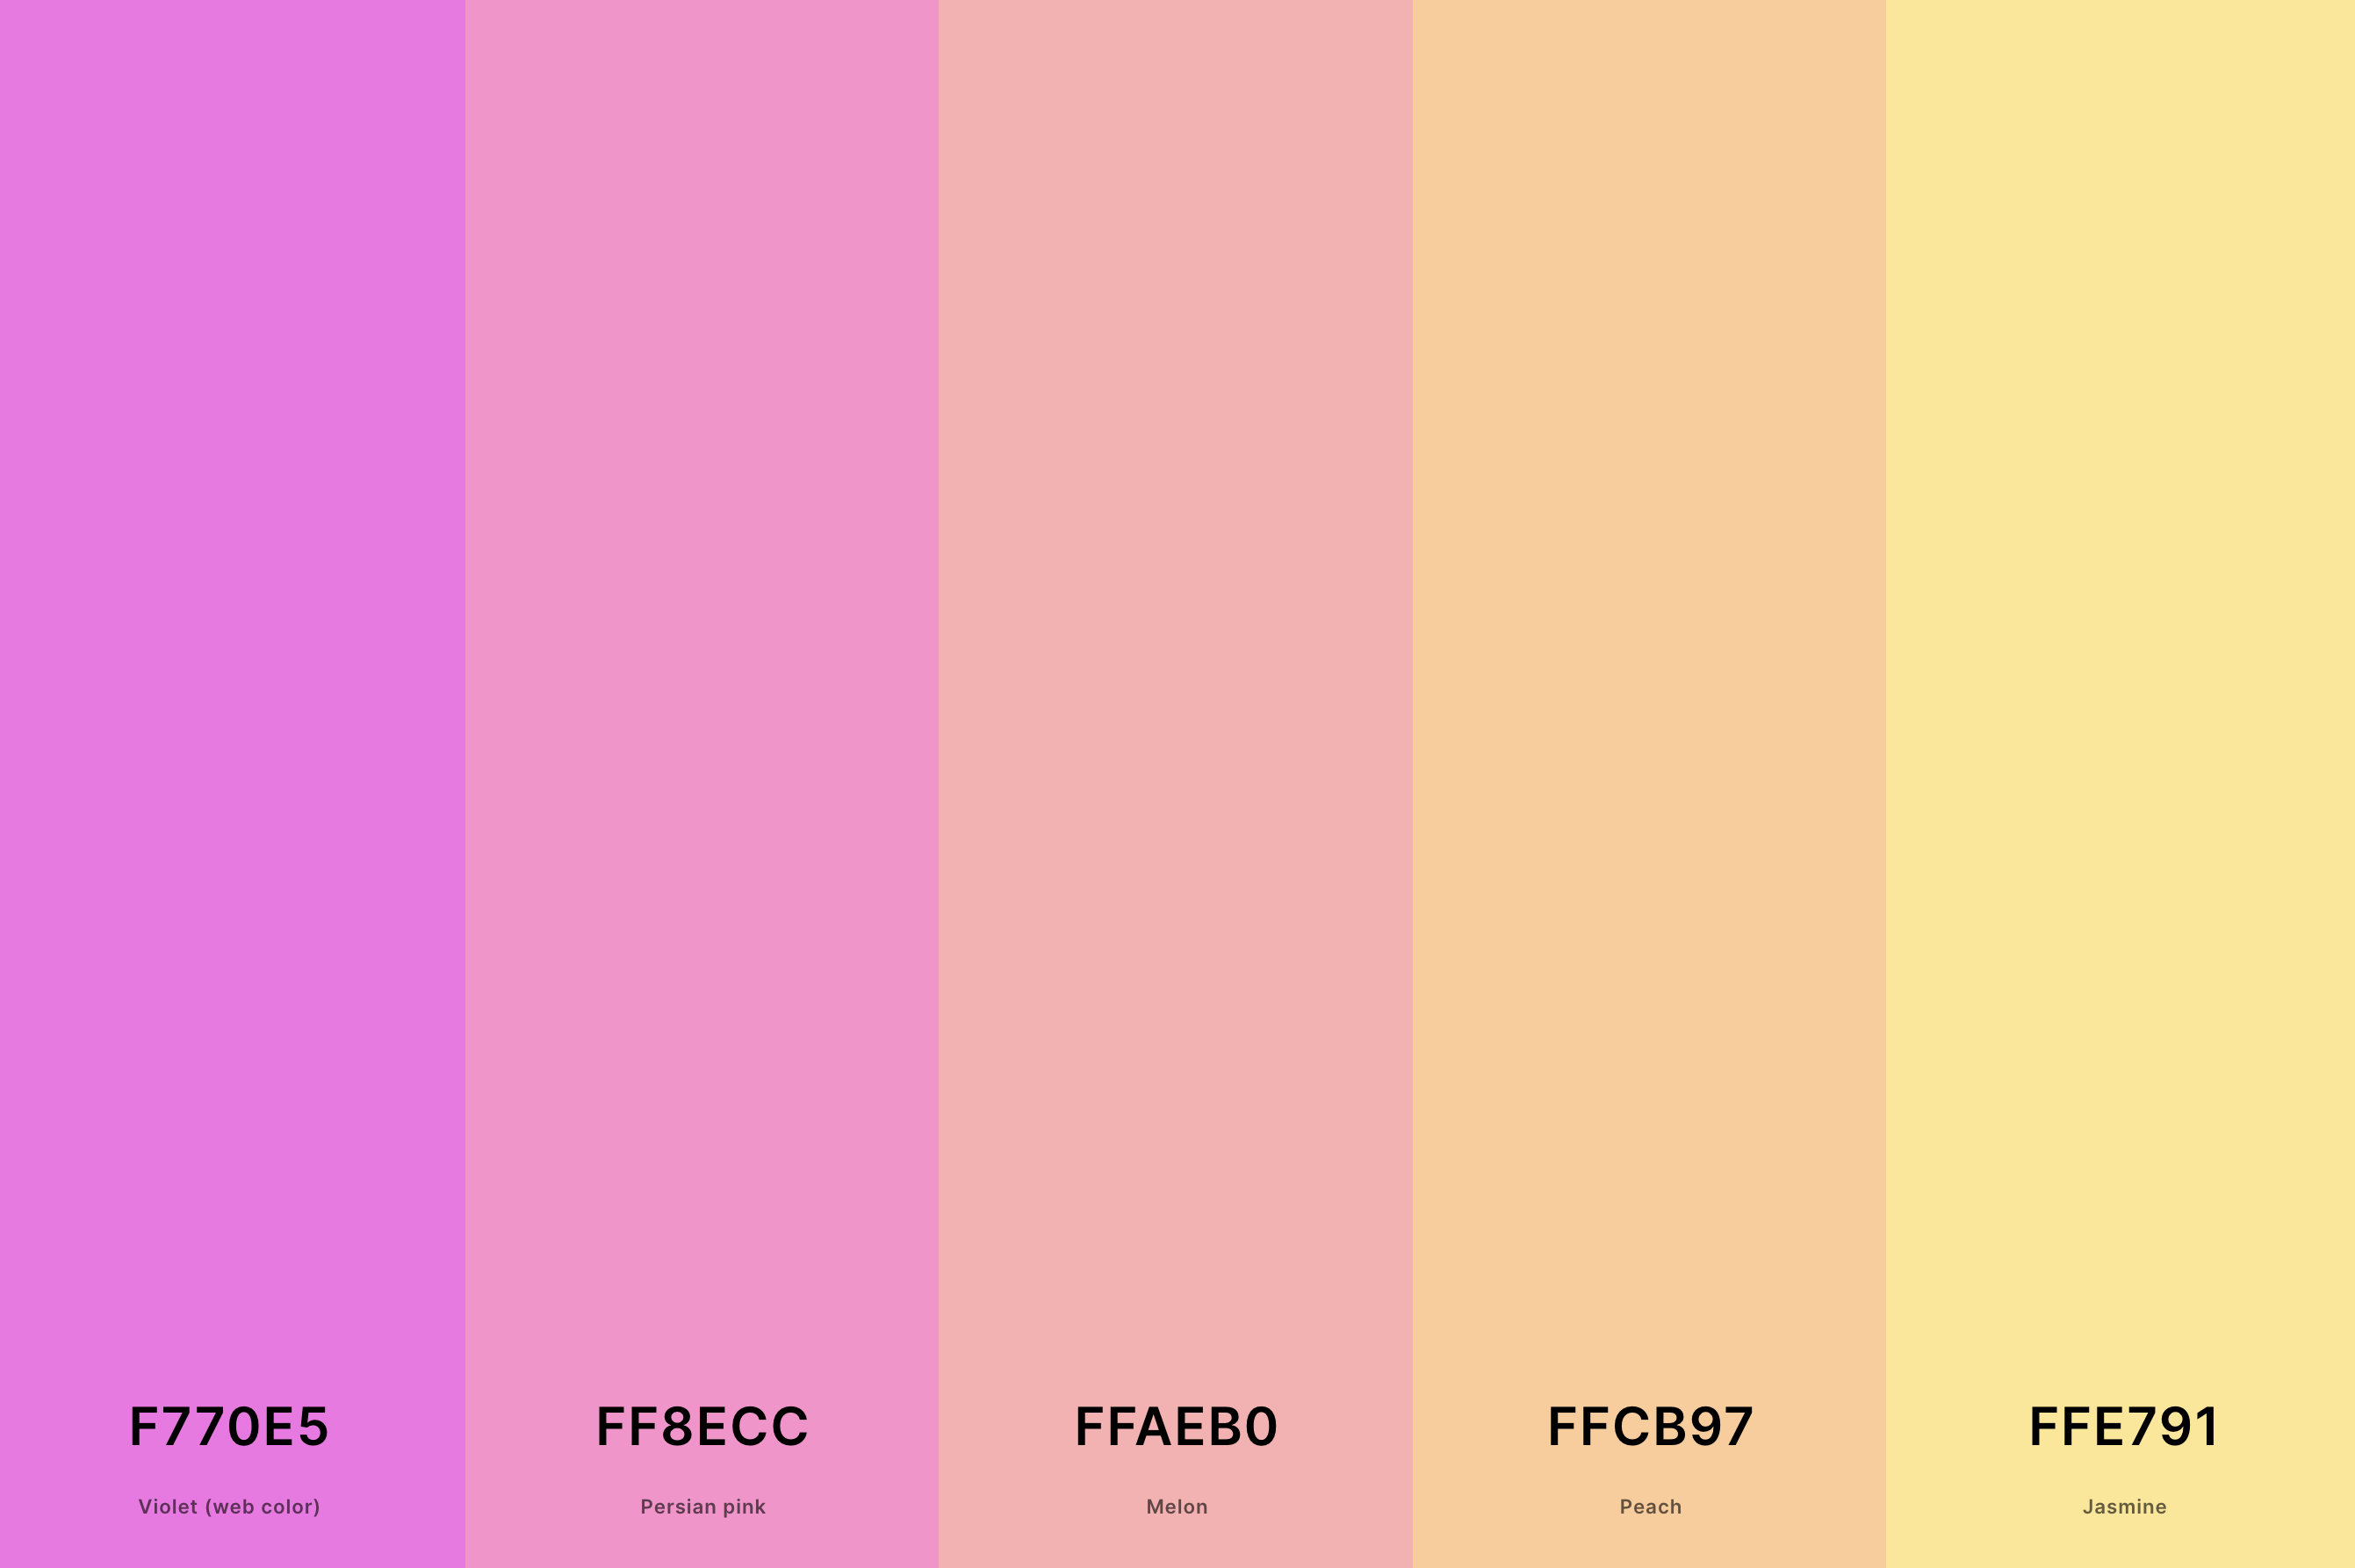 15. Pastel Sunset Color Palette Color Palette with Violet (Web Color) (Hex #F770E5) + Persian Pink (Hex #FF8ECC) + Melon (Hex #FFAEB0) + Peach (Hex #FFCB97) + Jasmine (Hex #FFE791) Color Palette with Hex Codes